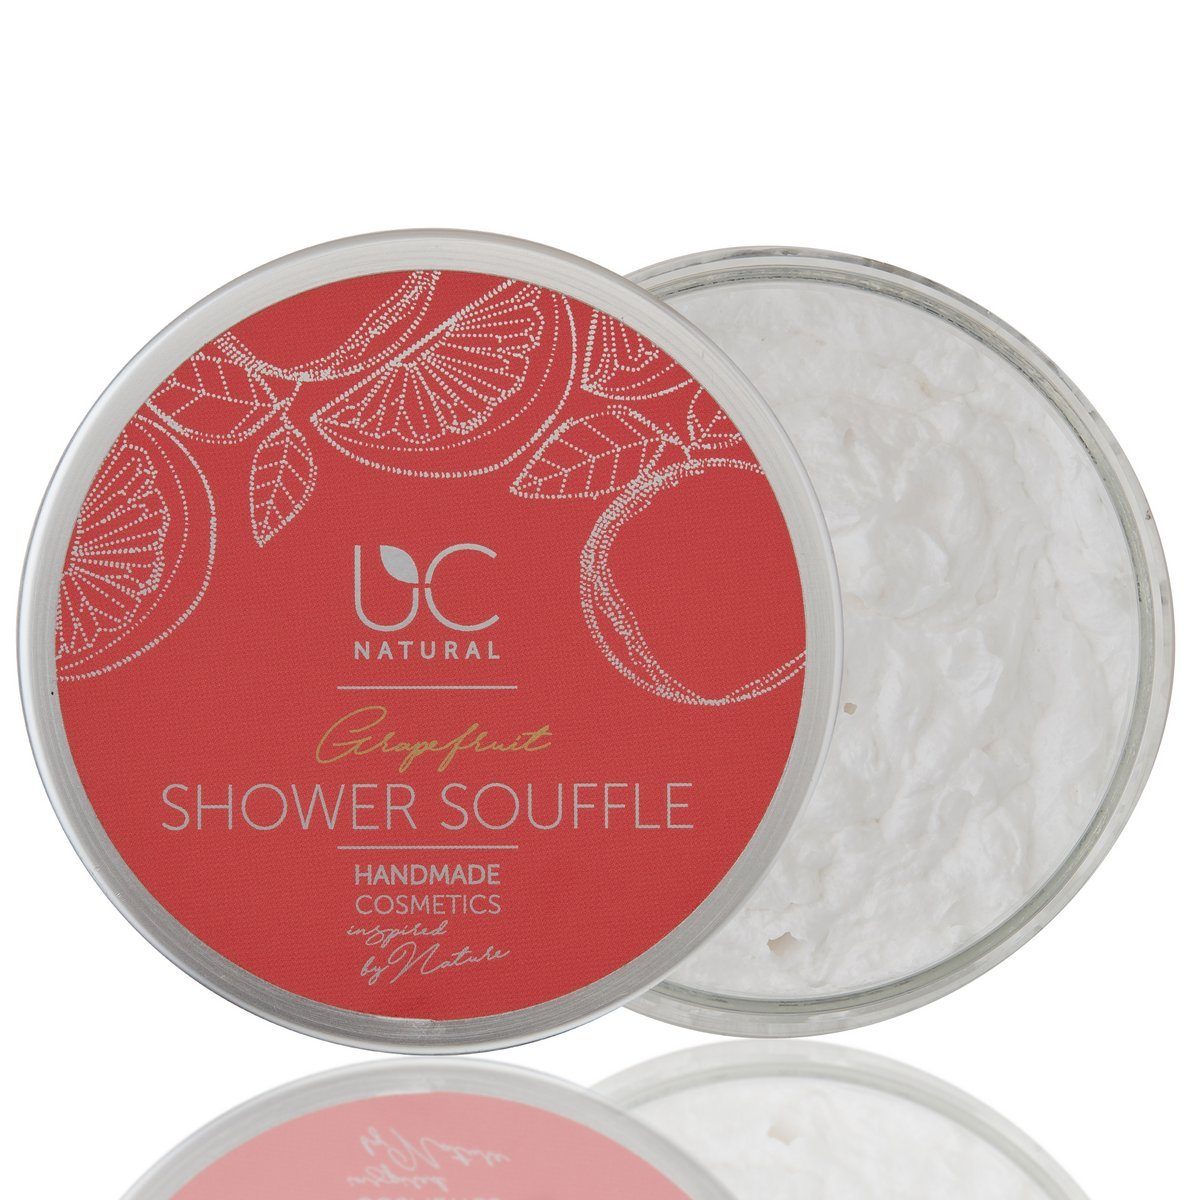 UC Natural Duschpflege UC Natural Shower Souffle, 1-tlg., Grapefruit Shower Soufflé handgemacht 150g vegan